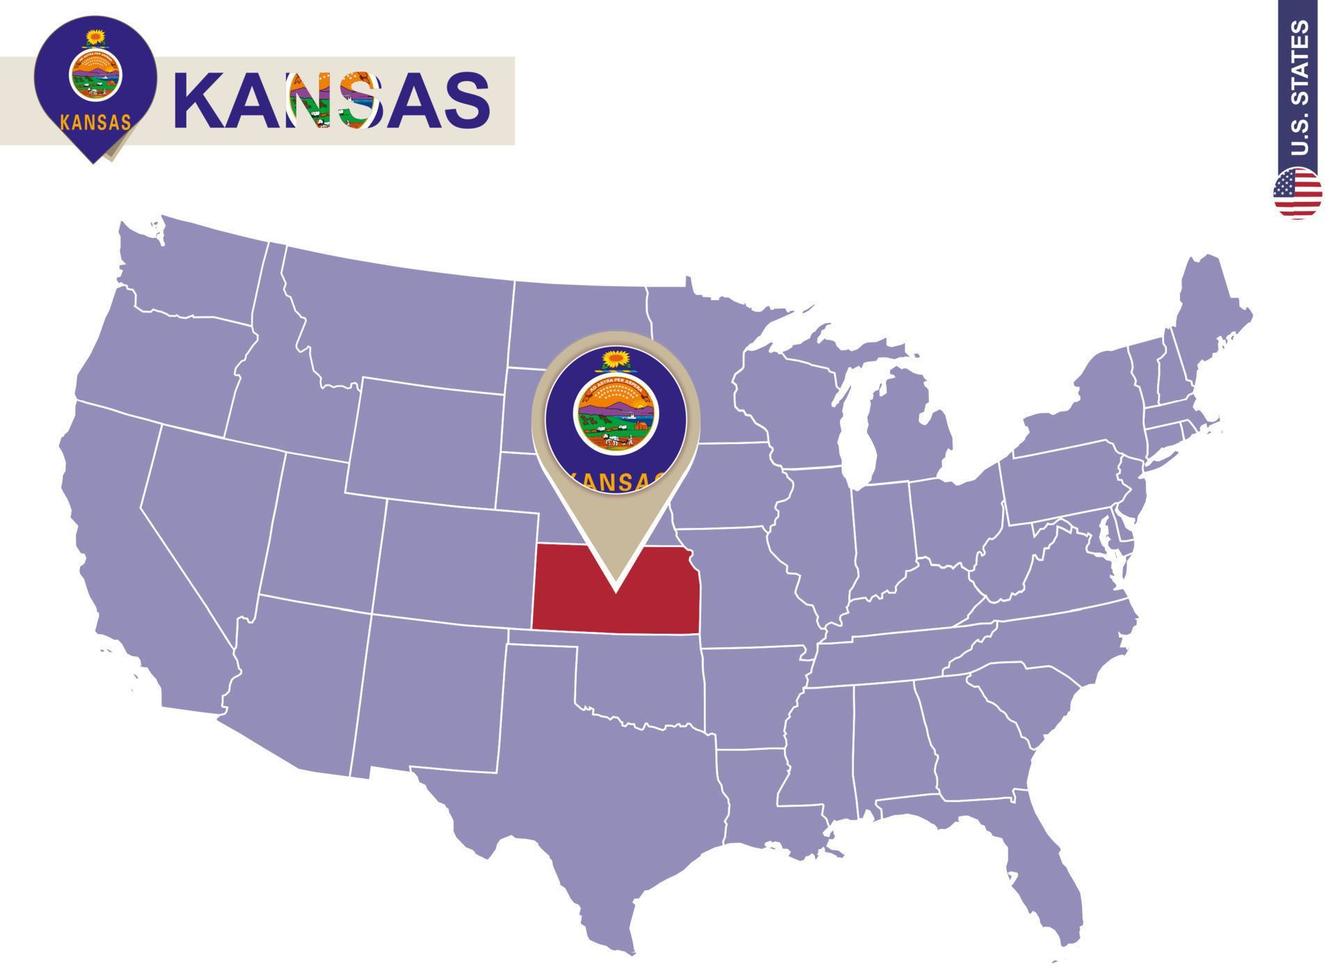 Kansas State auf der Karte der USA. Kansas-Flagge und Karte. vektor